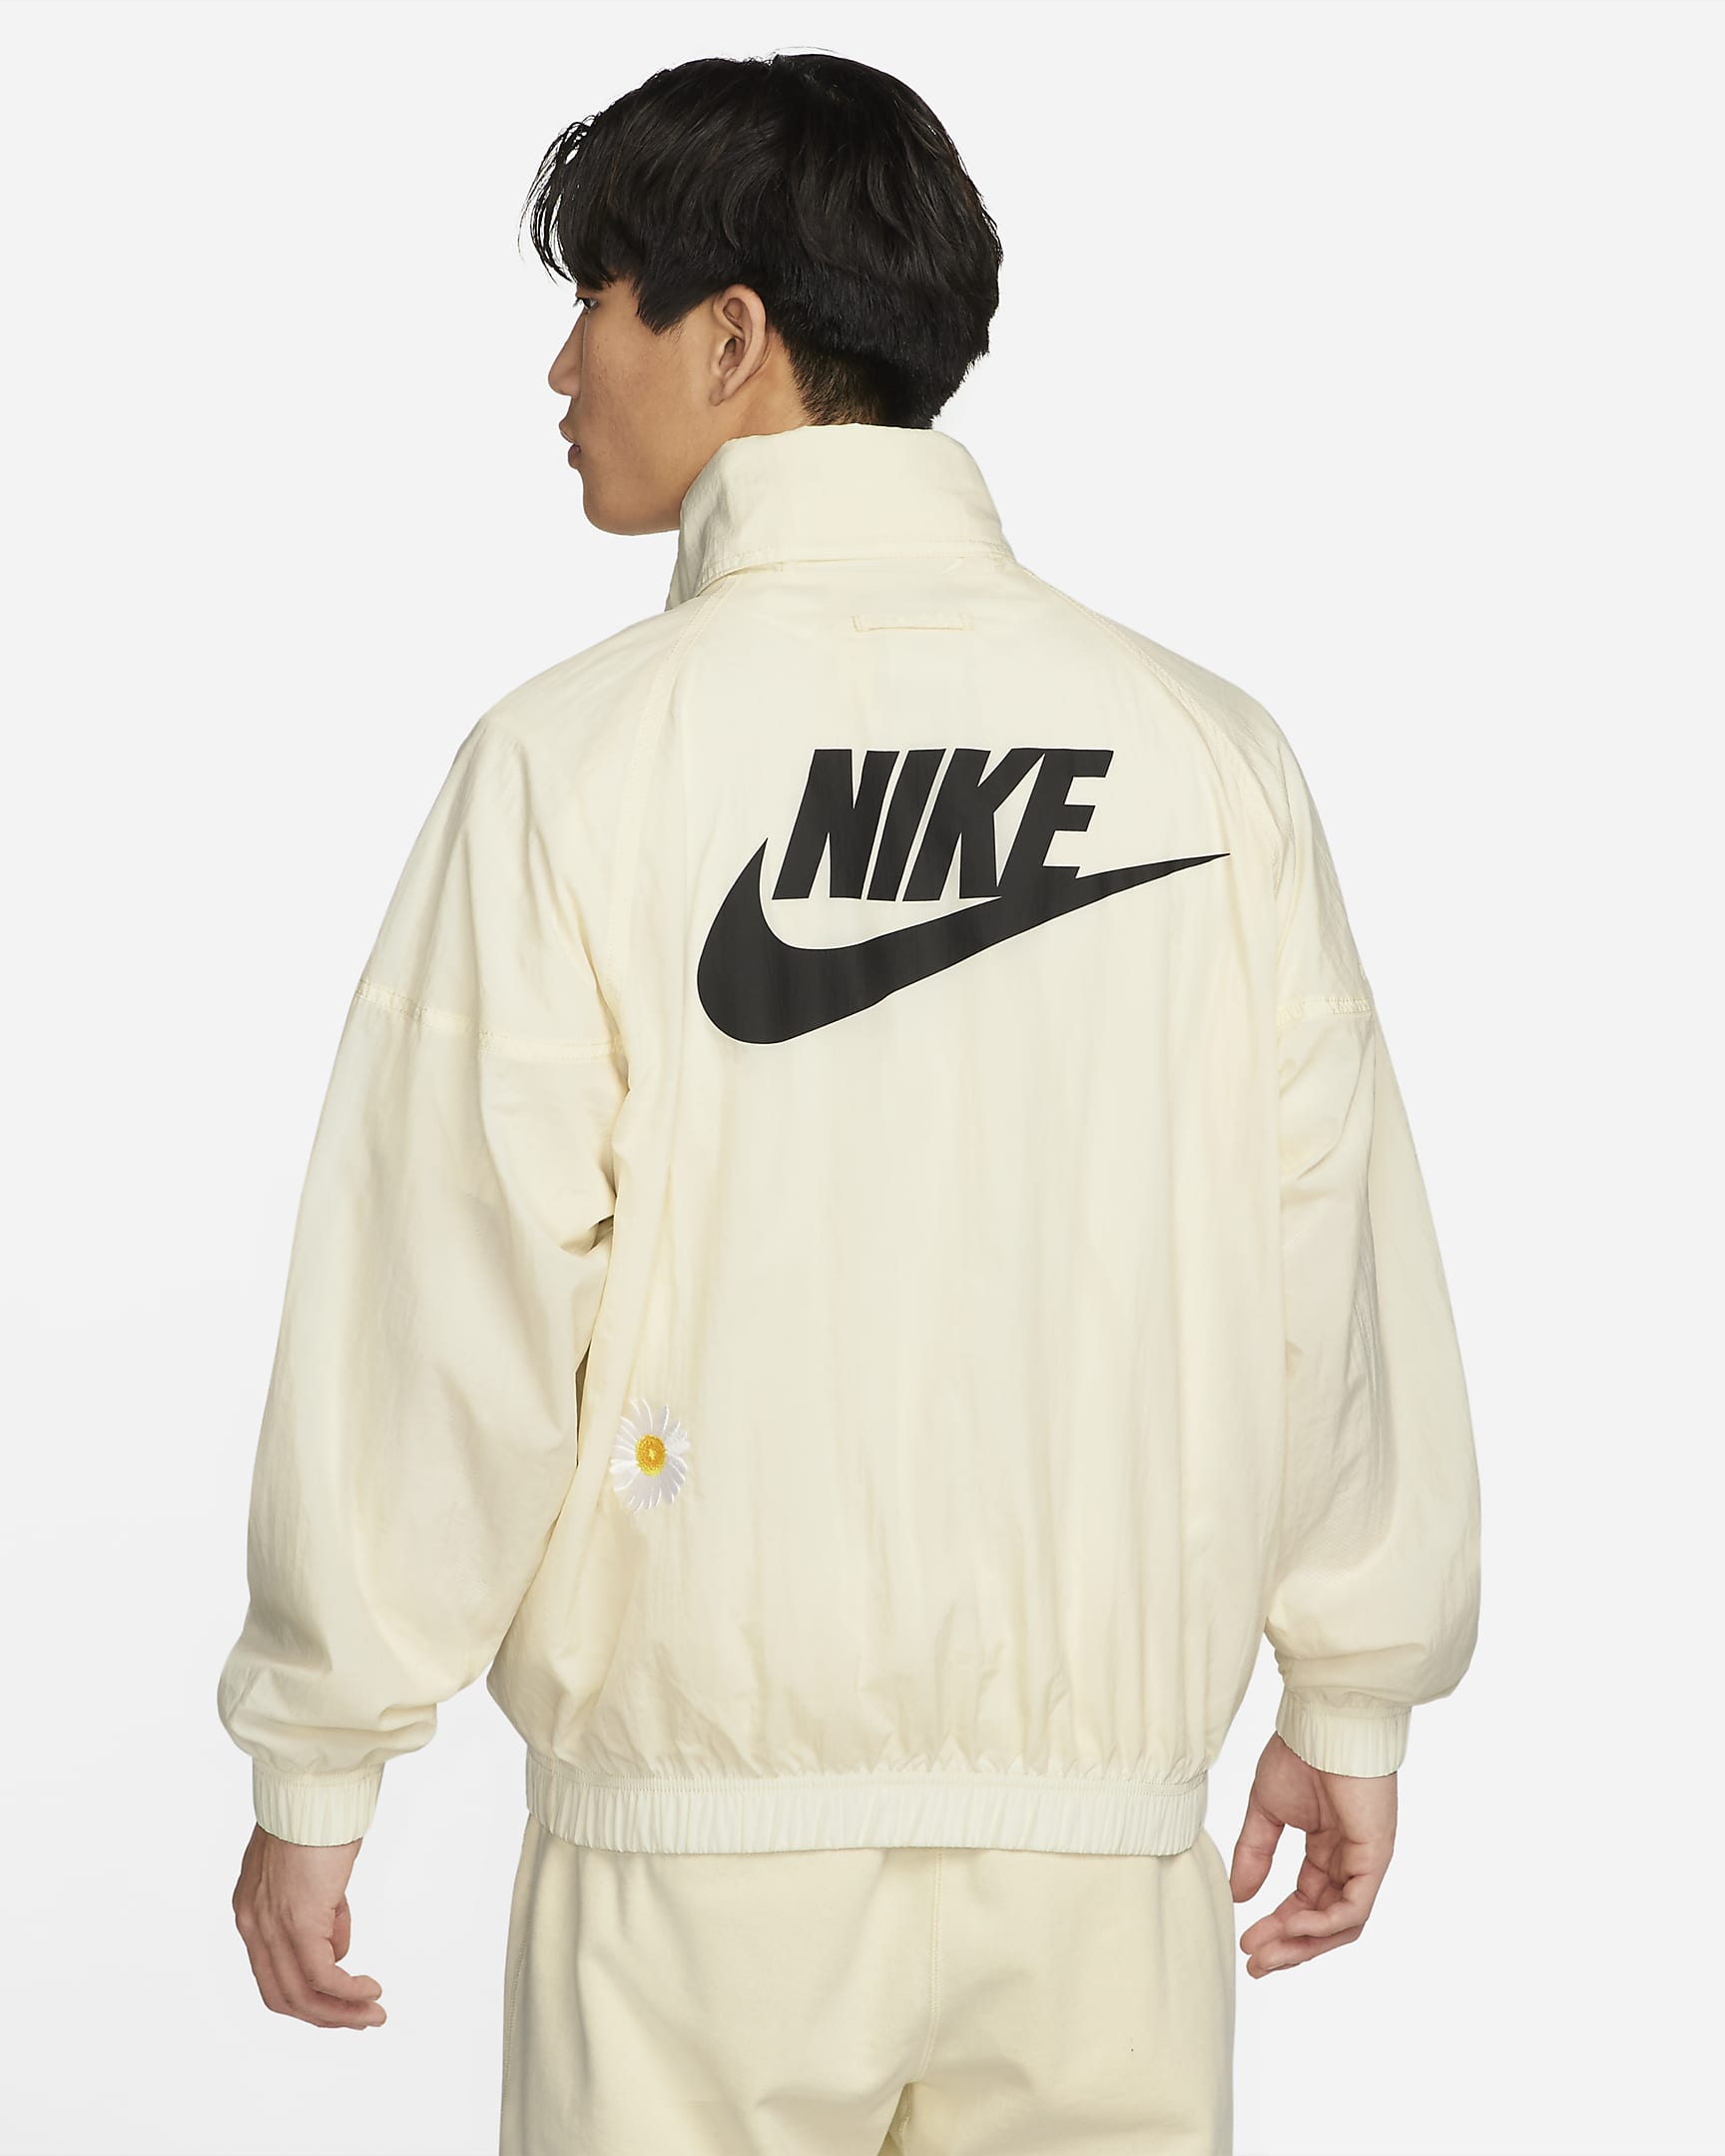 Nike Sportswear Men's Woven Lined Jacket. Nike JP